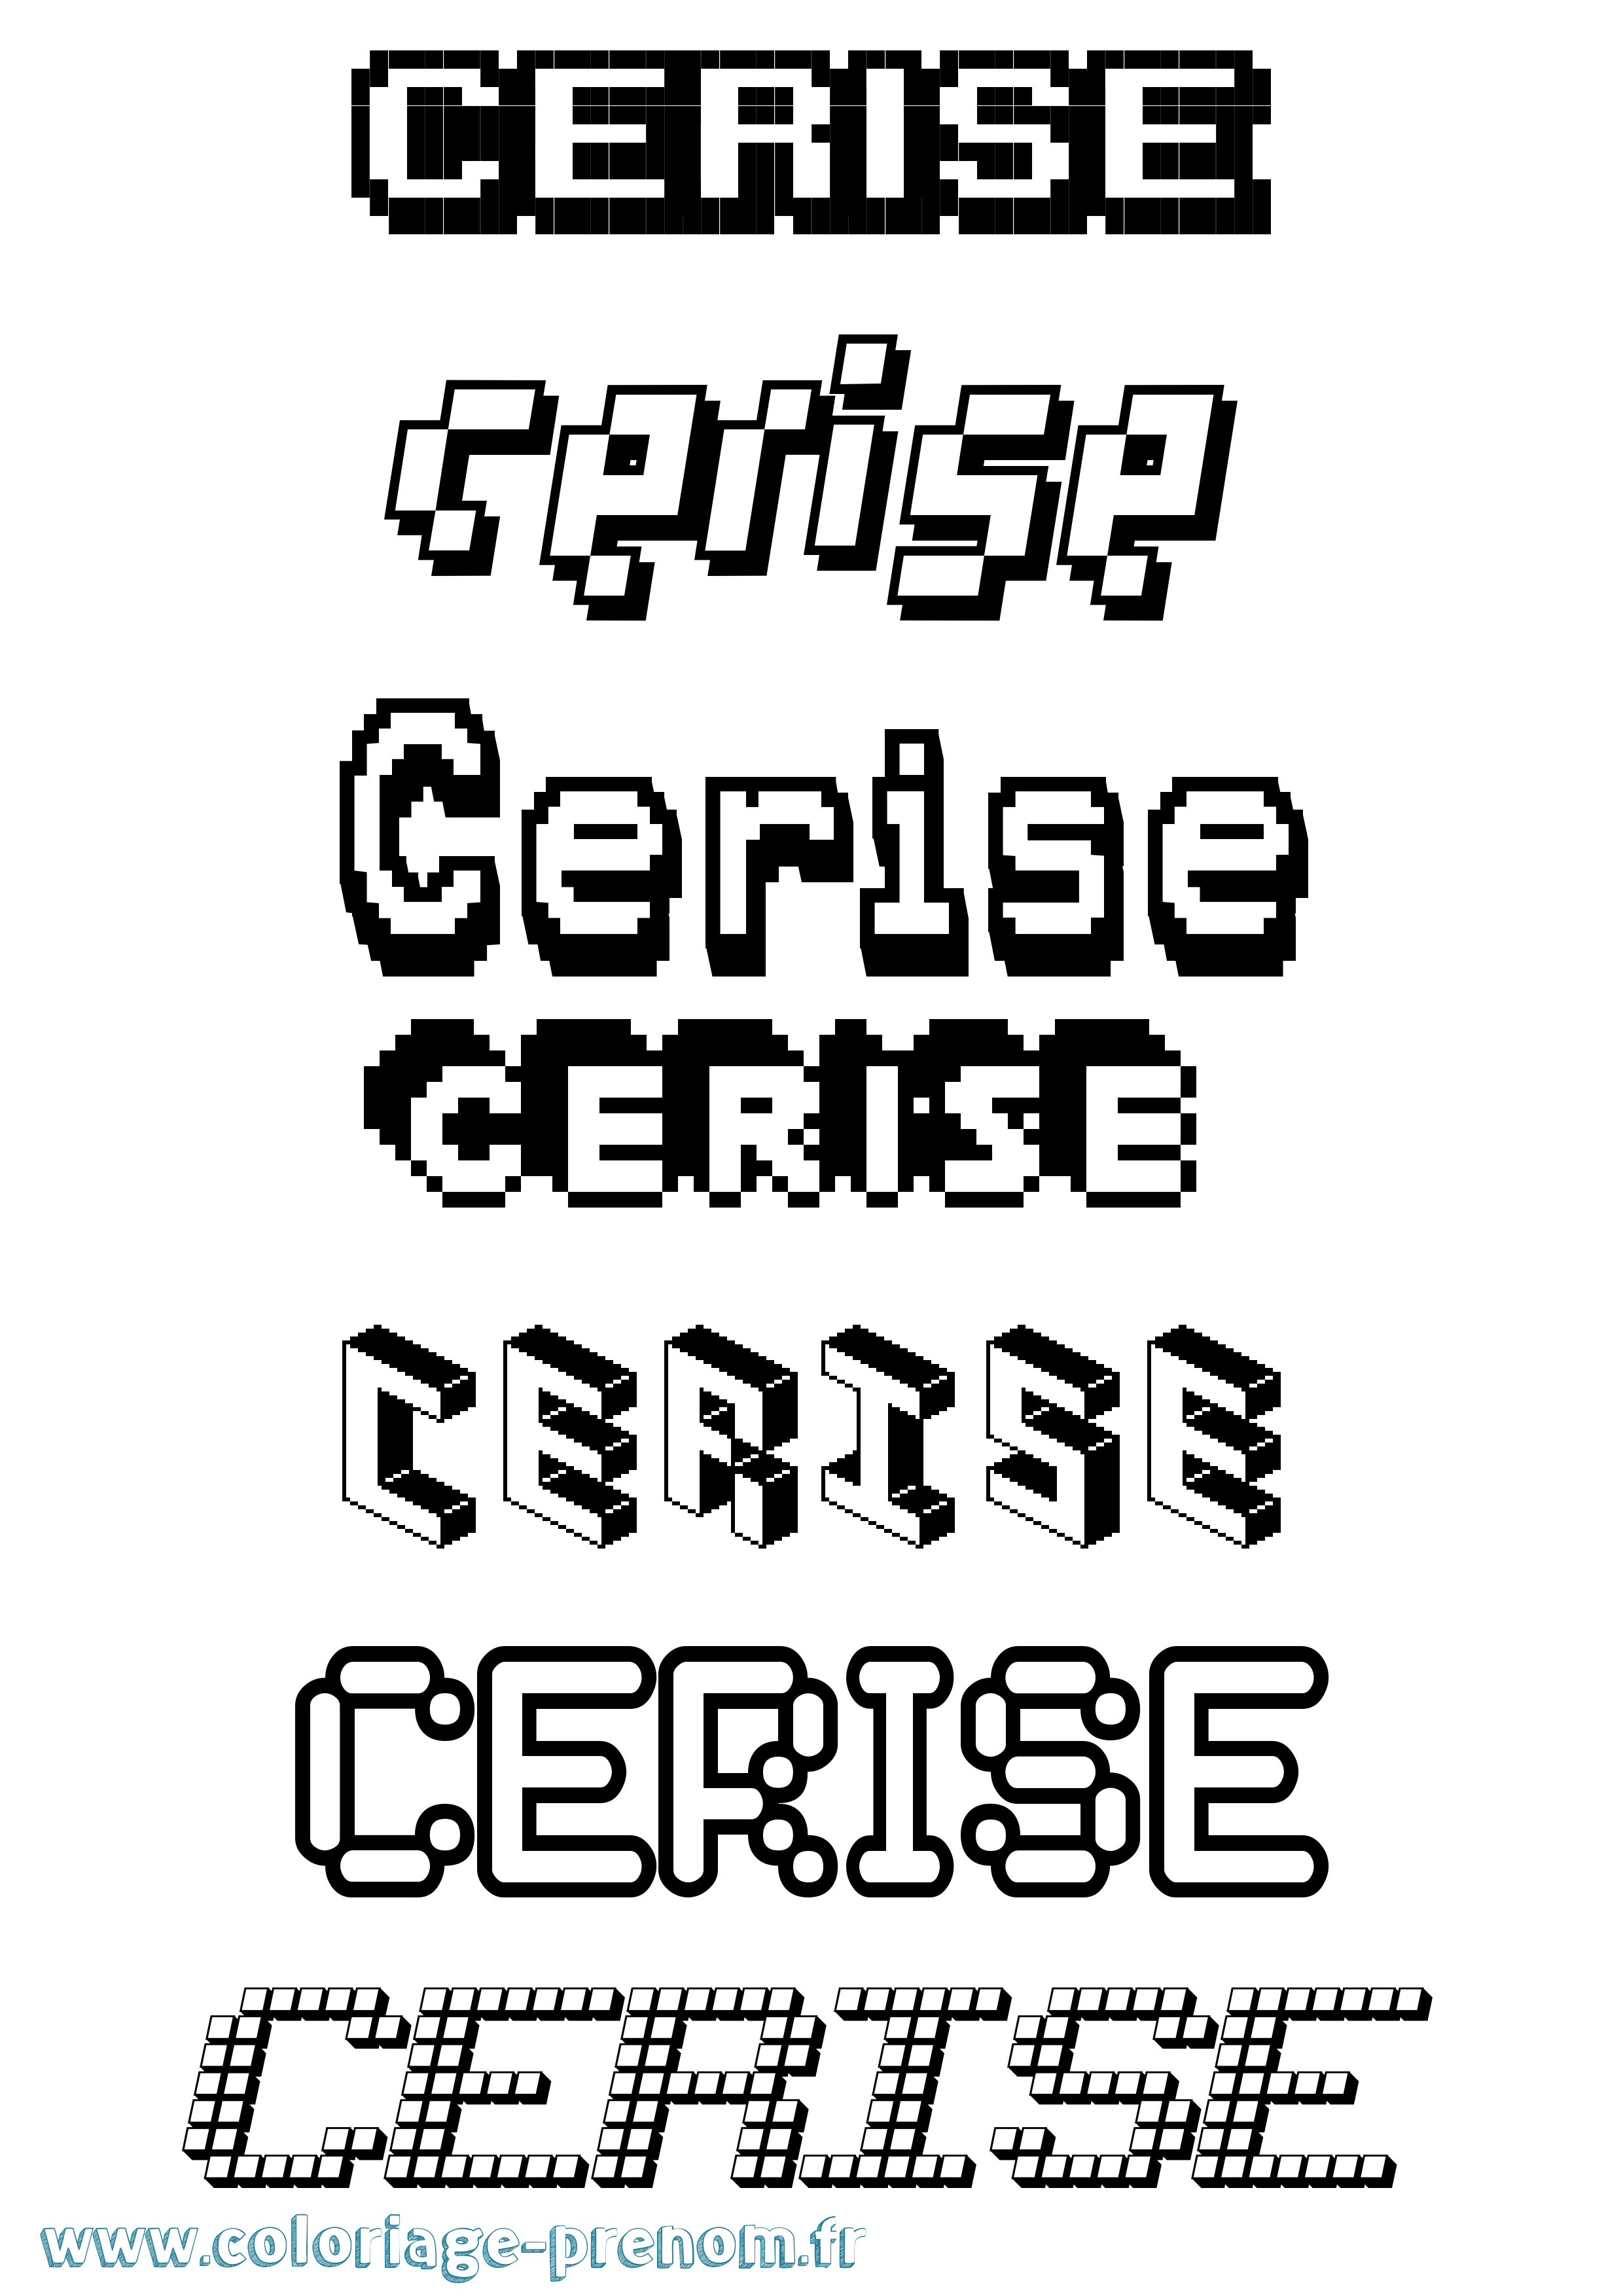 Coloriage prénom Cerise